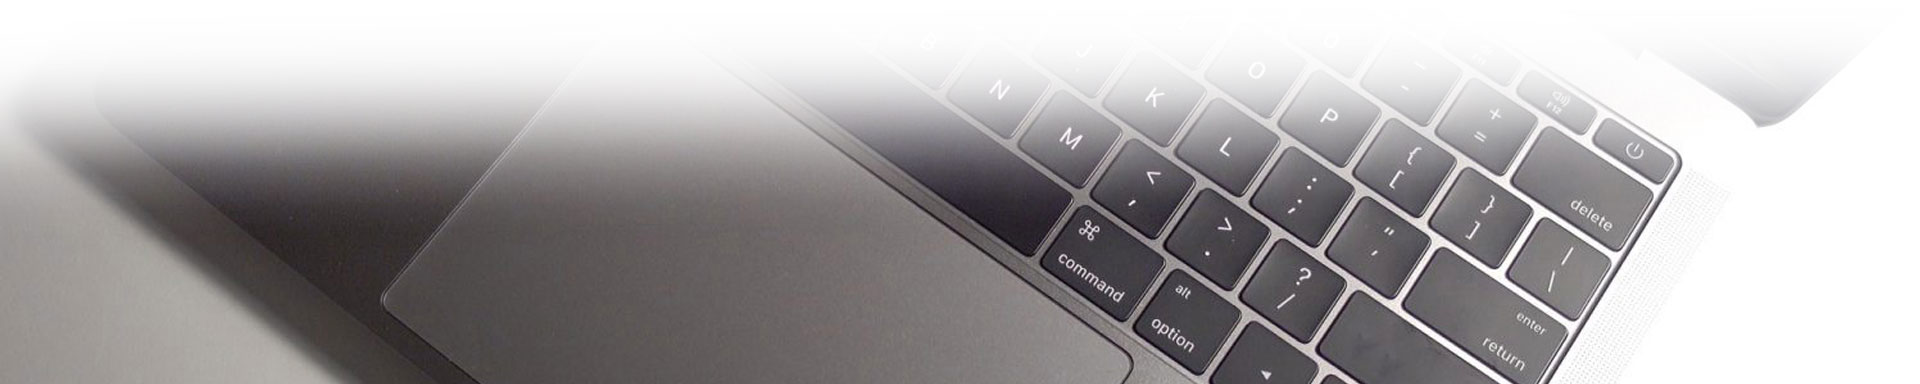 apple macbook keyboard trackpad repair uae - Apple Force